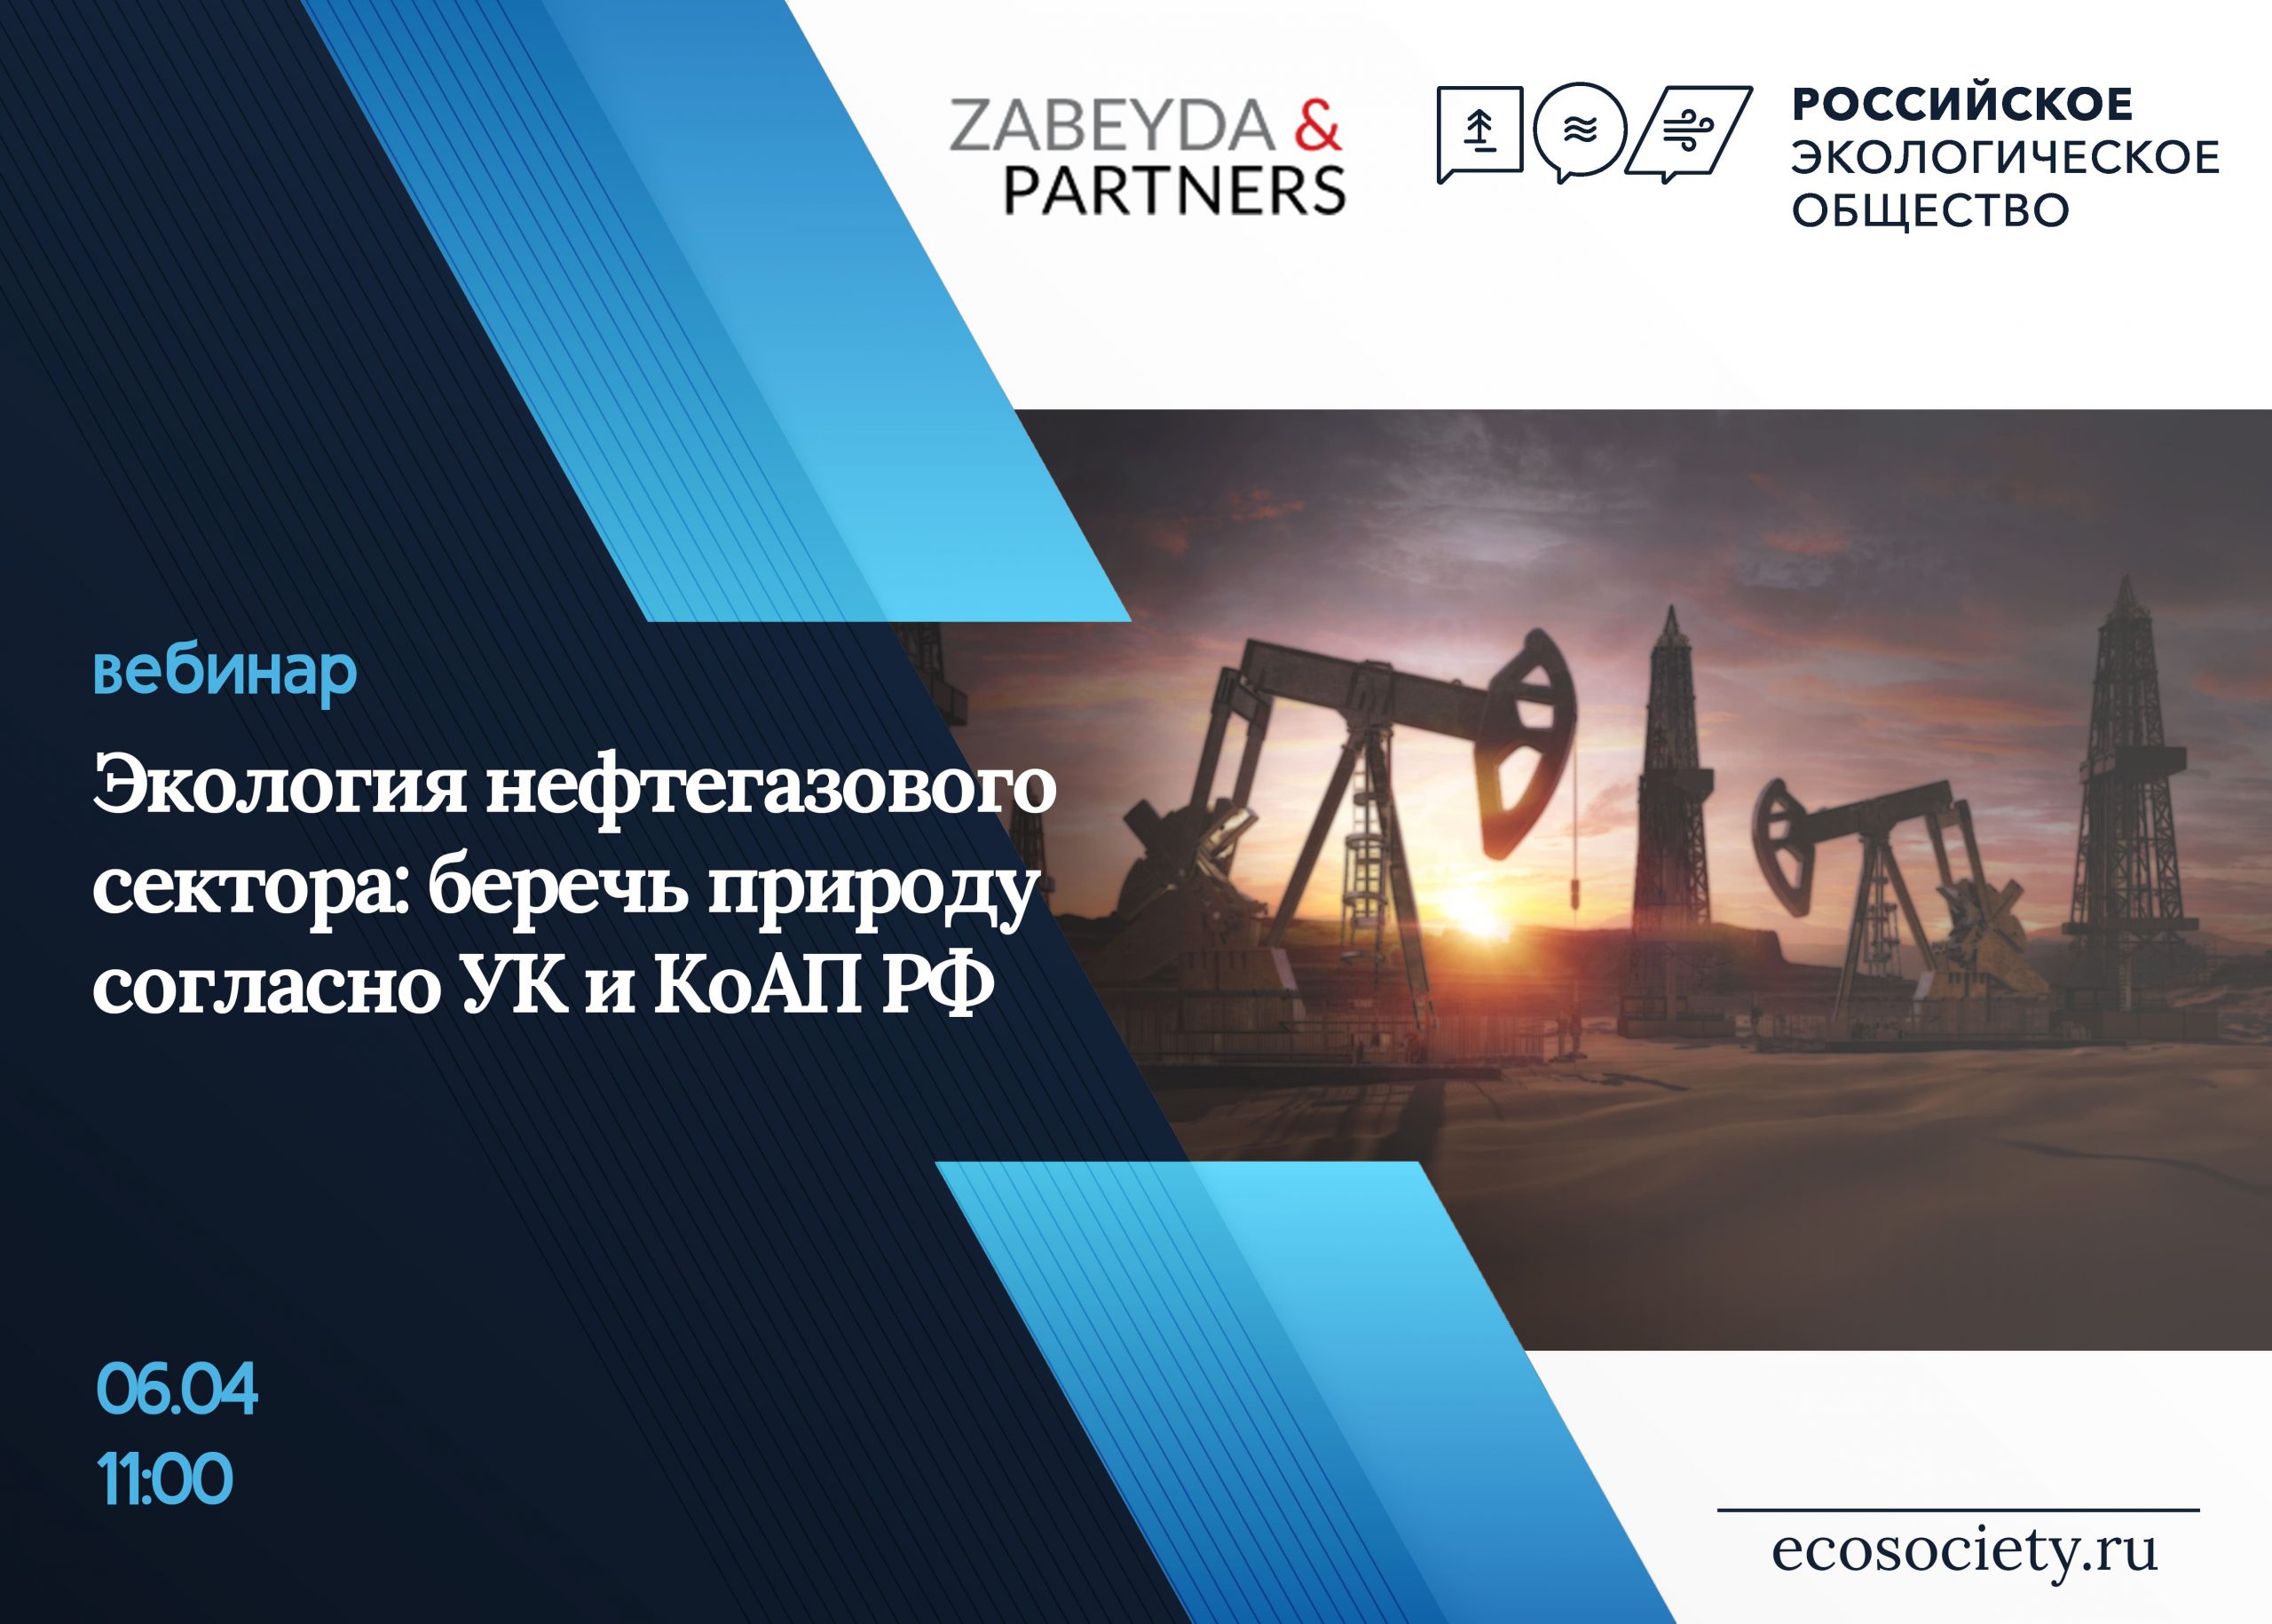 вебинар на тему «Экология нефтегазового сектора: беречь природу согласно УК и КоАП РФ»